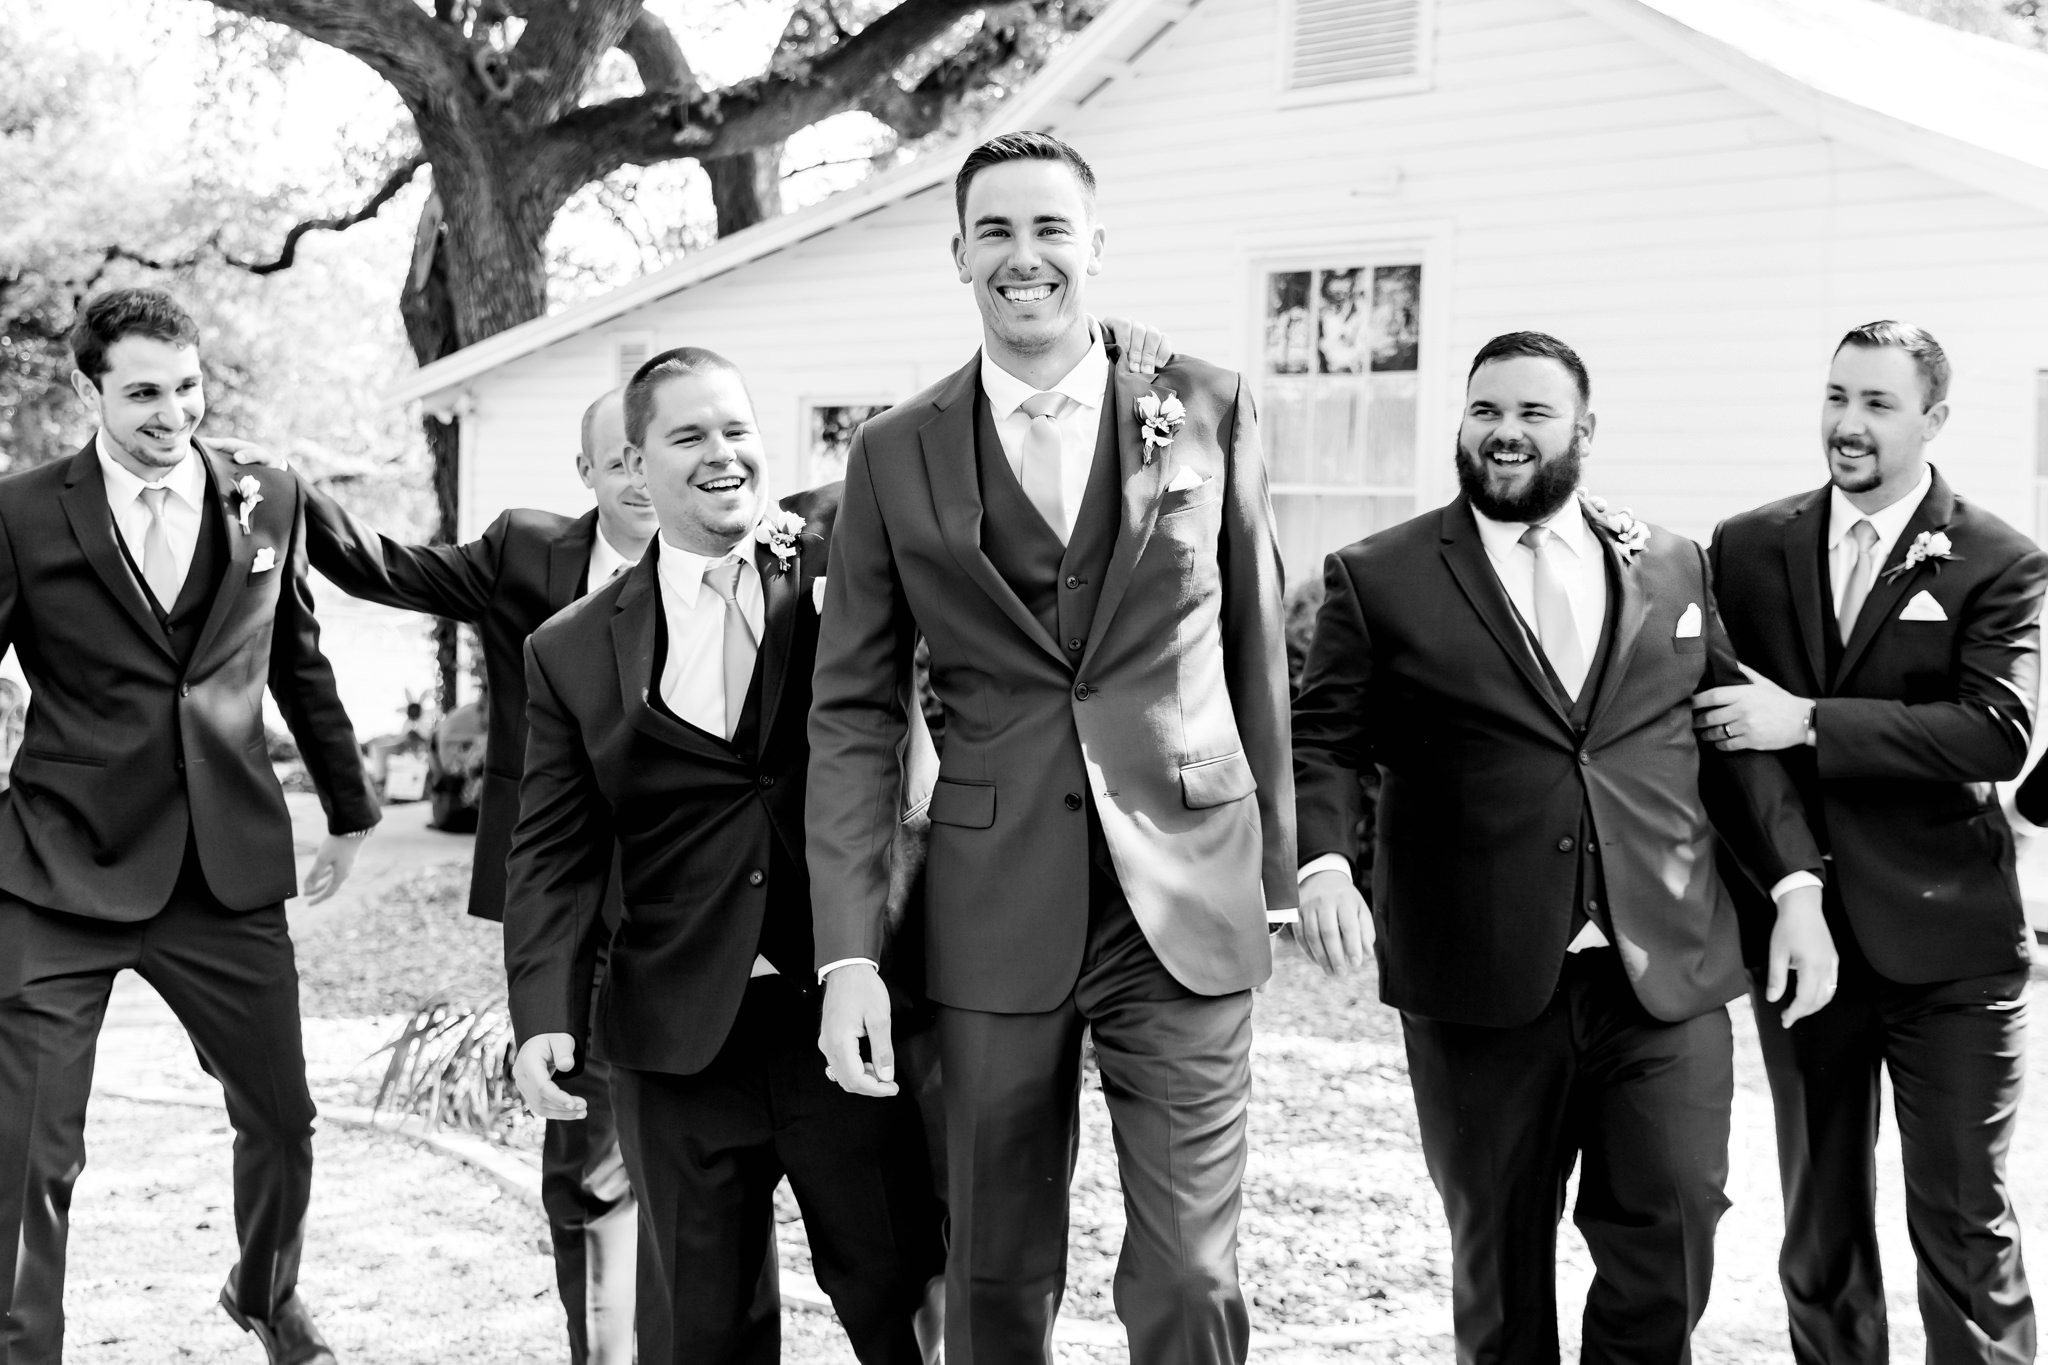 A Mauve and Blue Wedding at Gruene Estate in New Braunfels, TX by Dawn Elizabeth Studios, New Braunfels Wedding Photographer